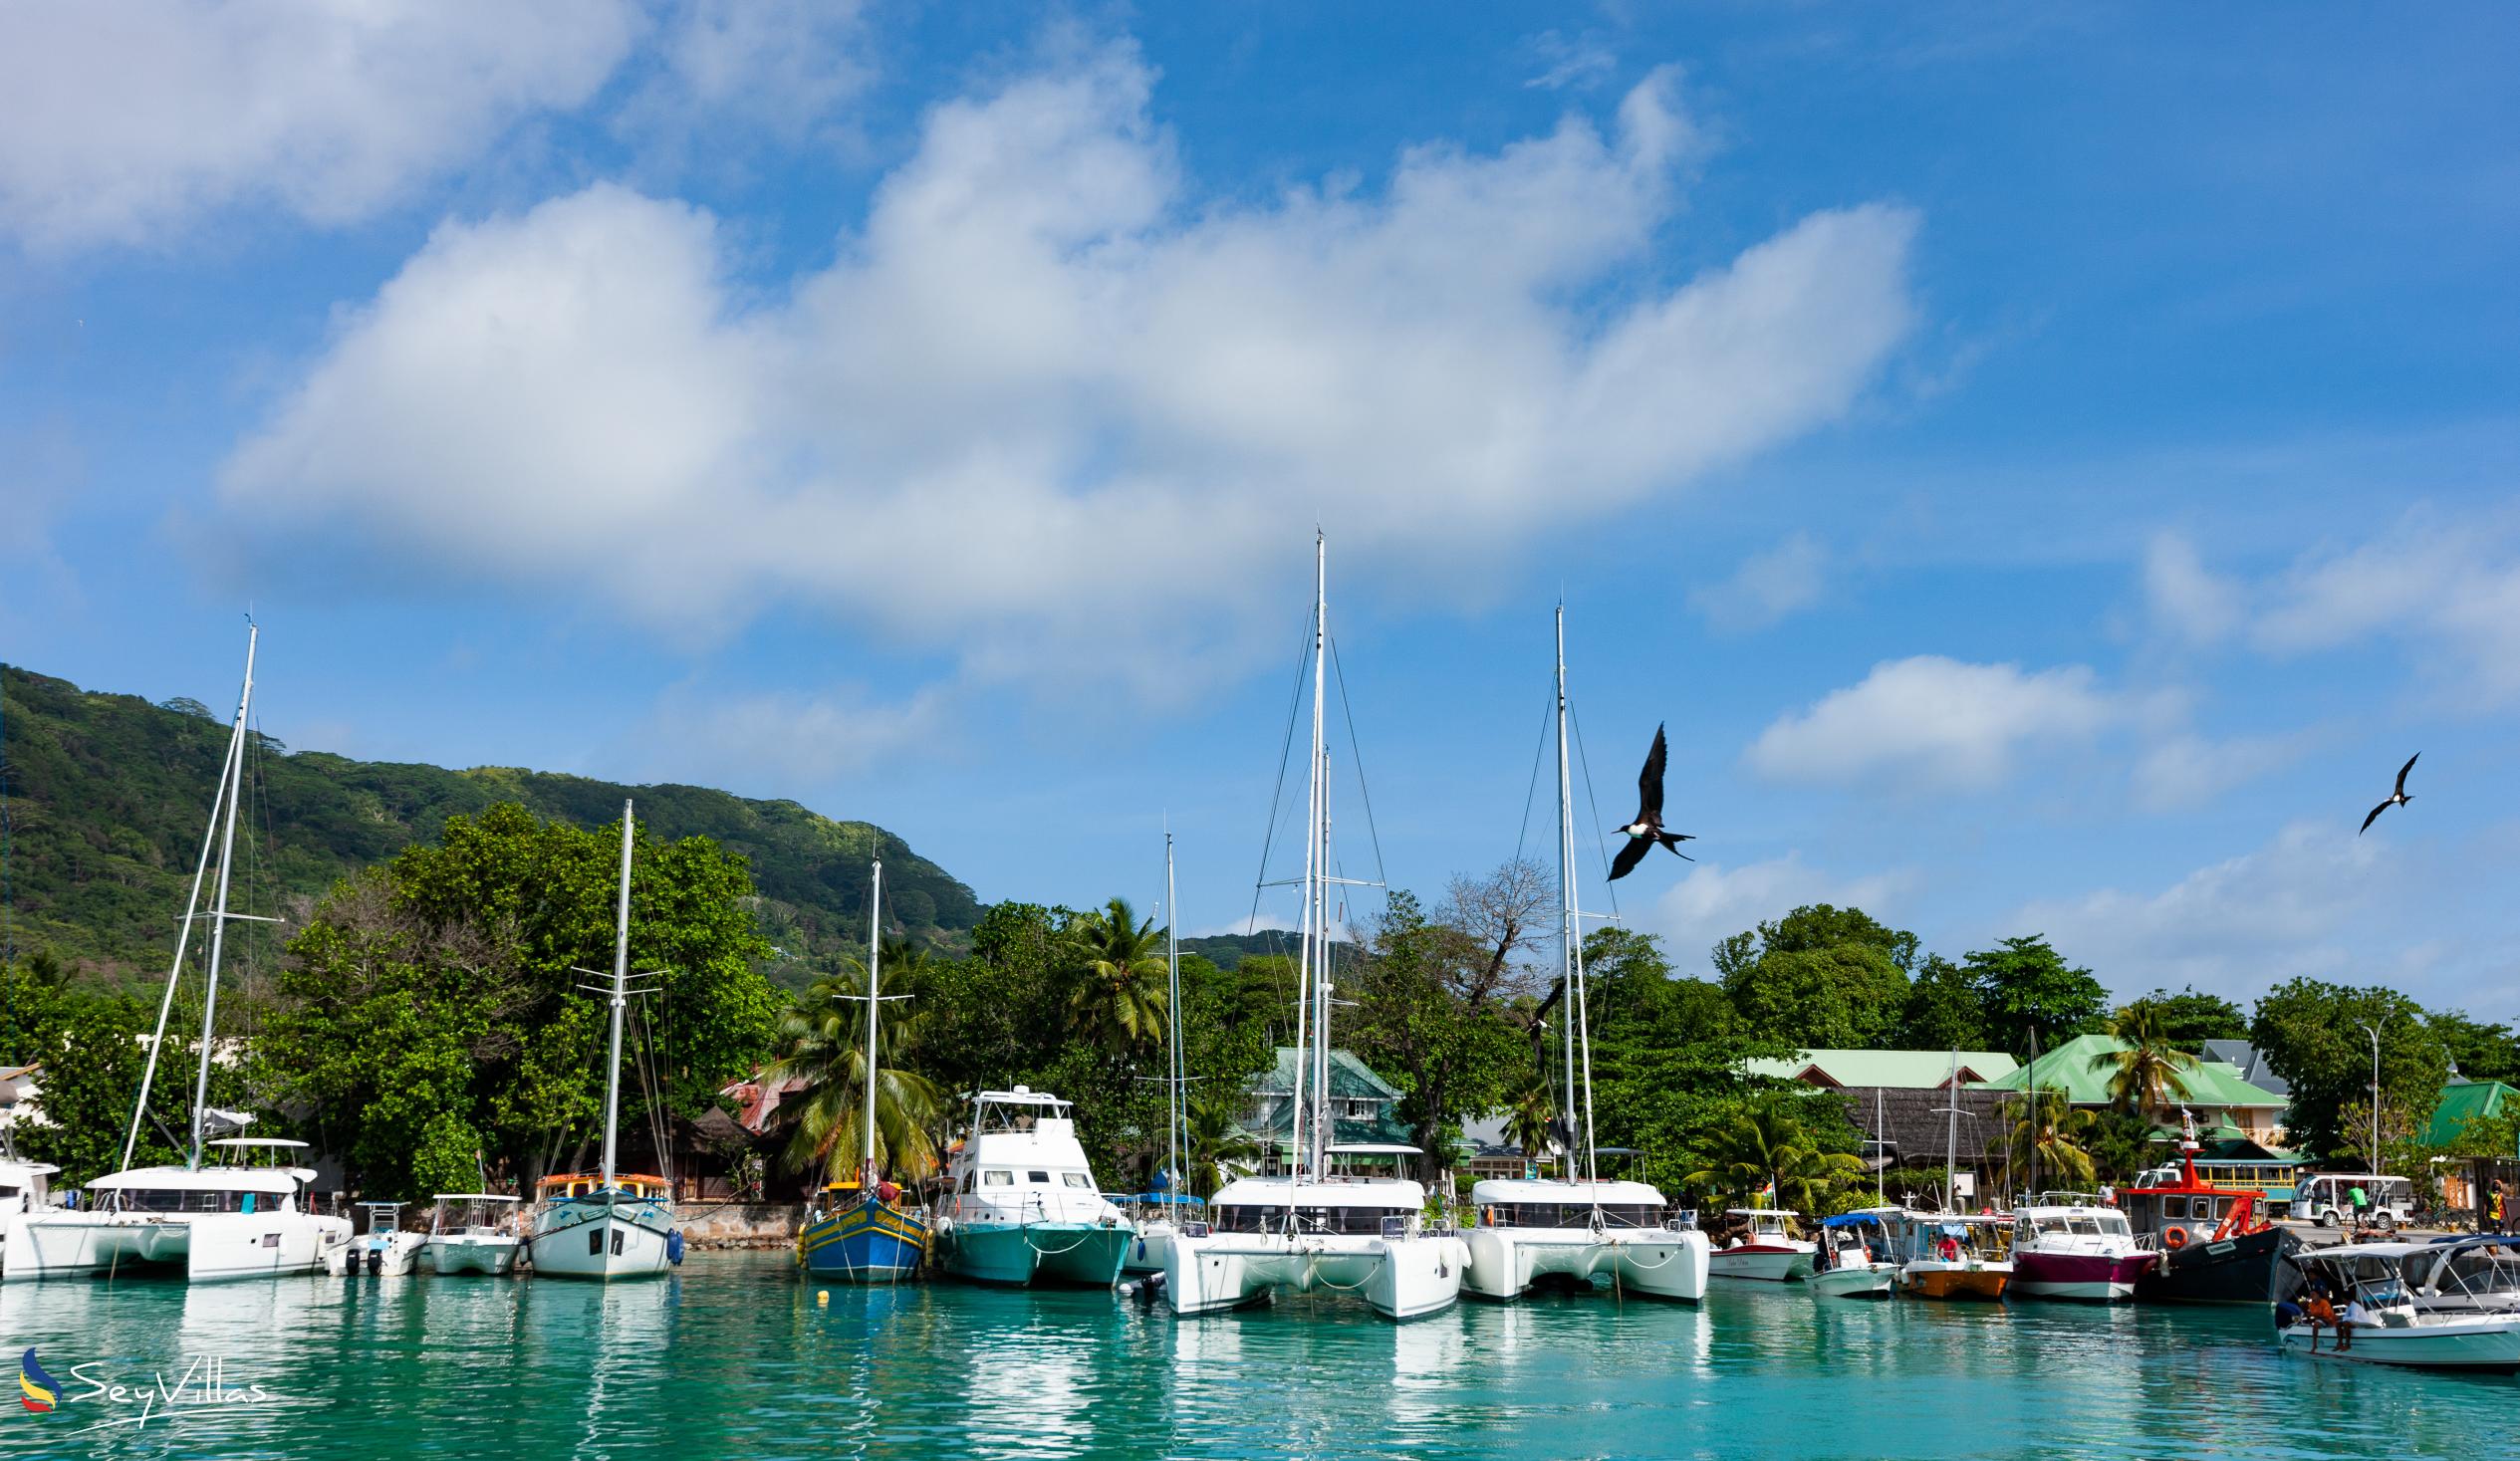 Photo 29: Maison Ed-Elle - Location - La Digue (Seychelles)